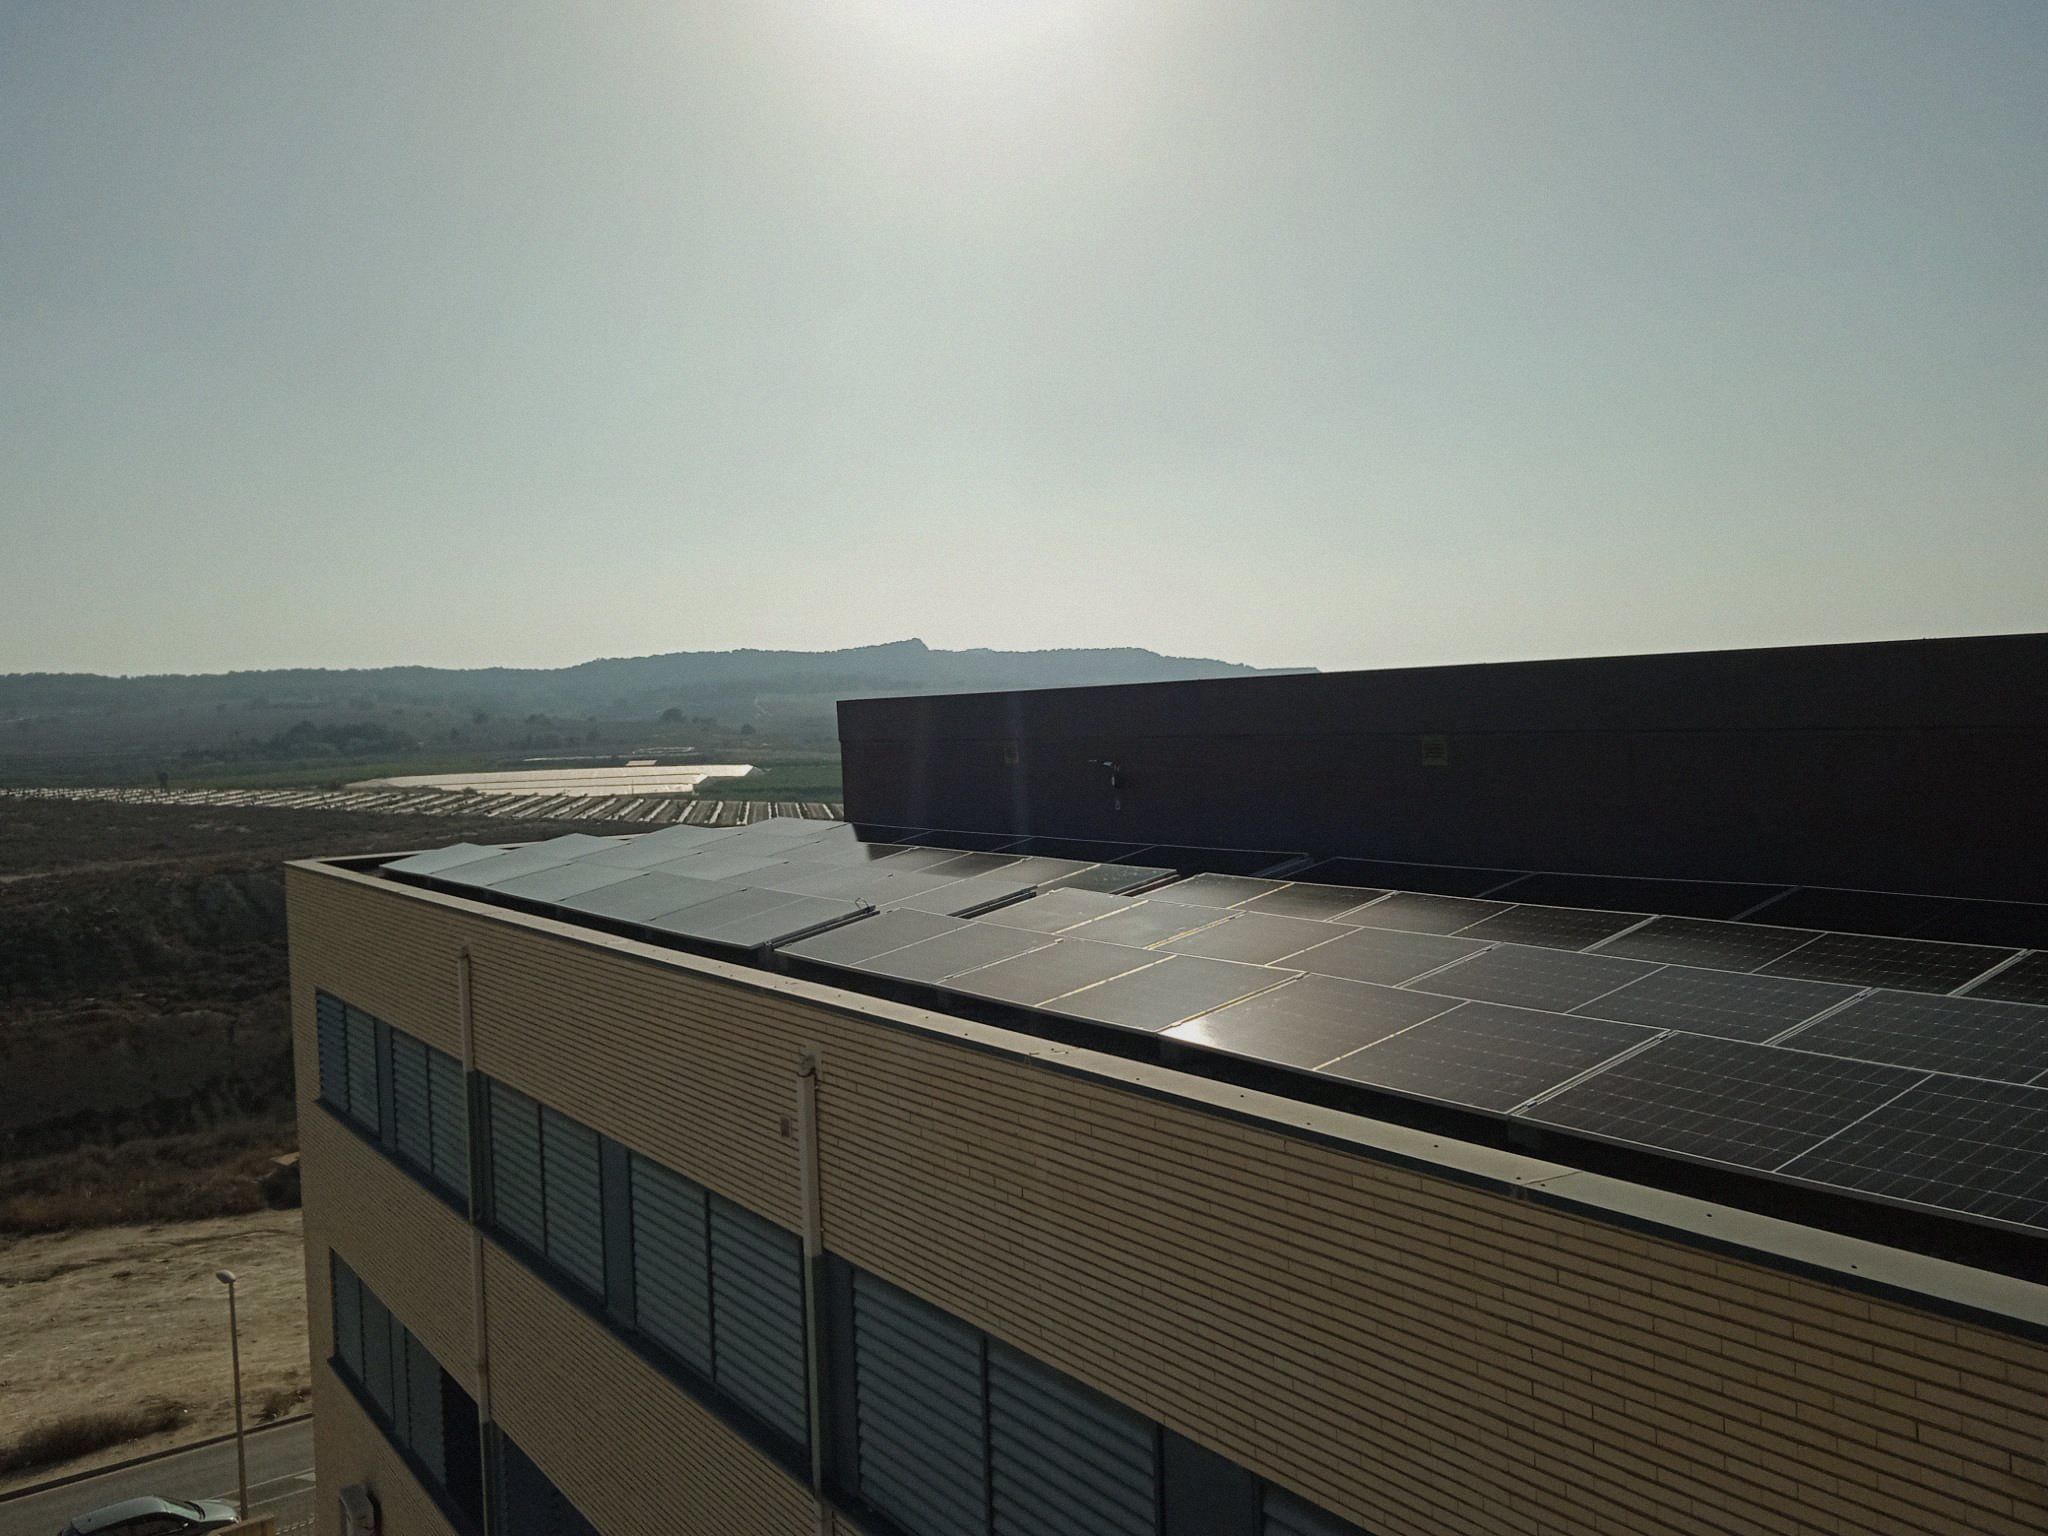 Paneles solares fotovoltaicos en la cubierta de un instituto 